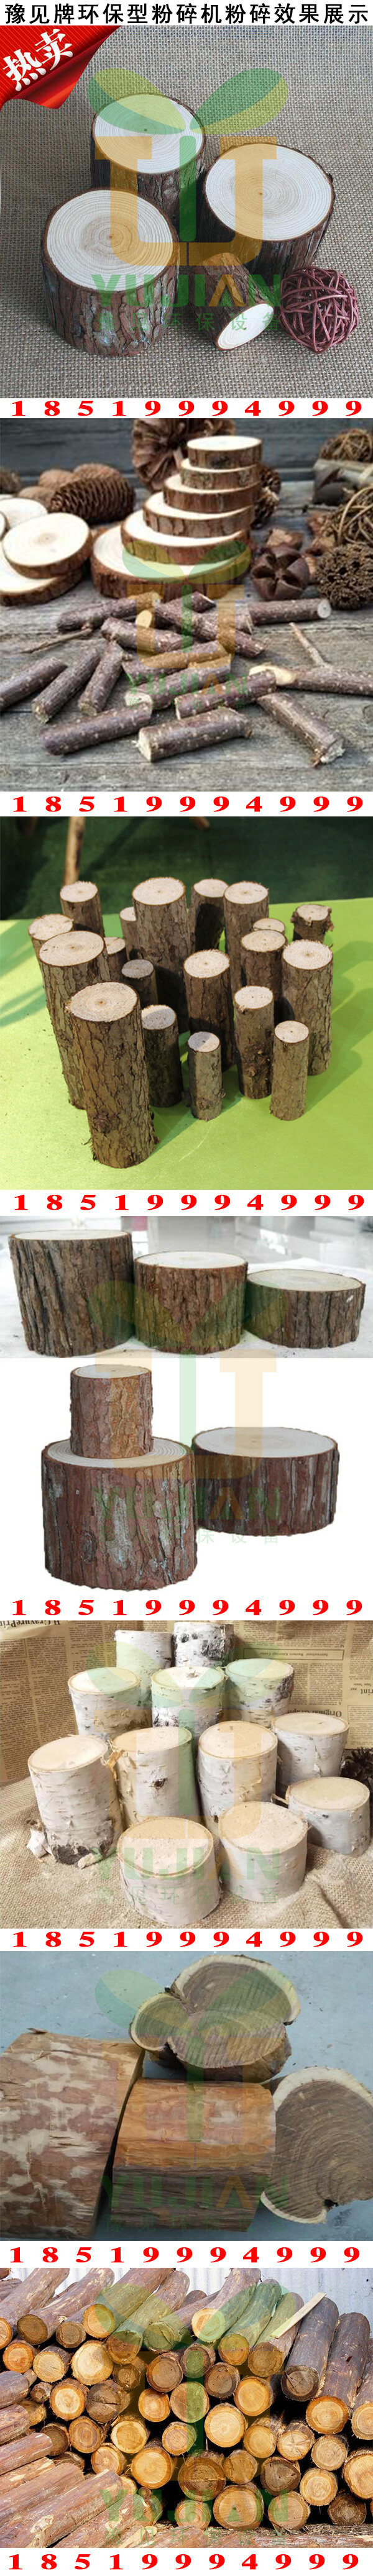 木材切段效果展示2